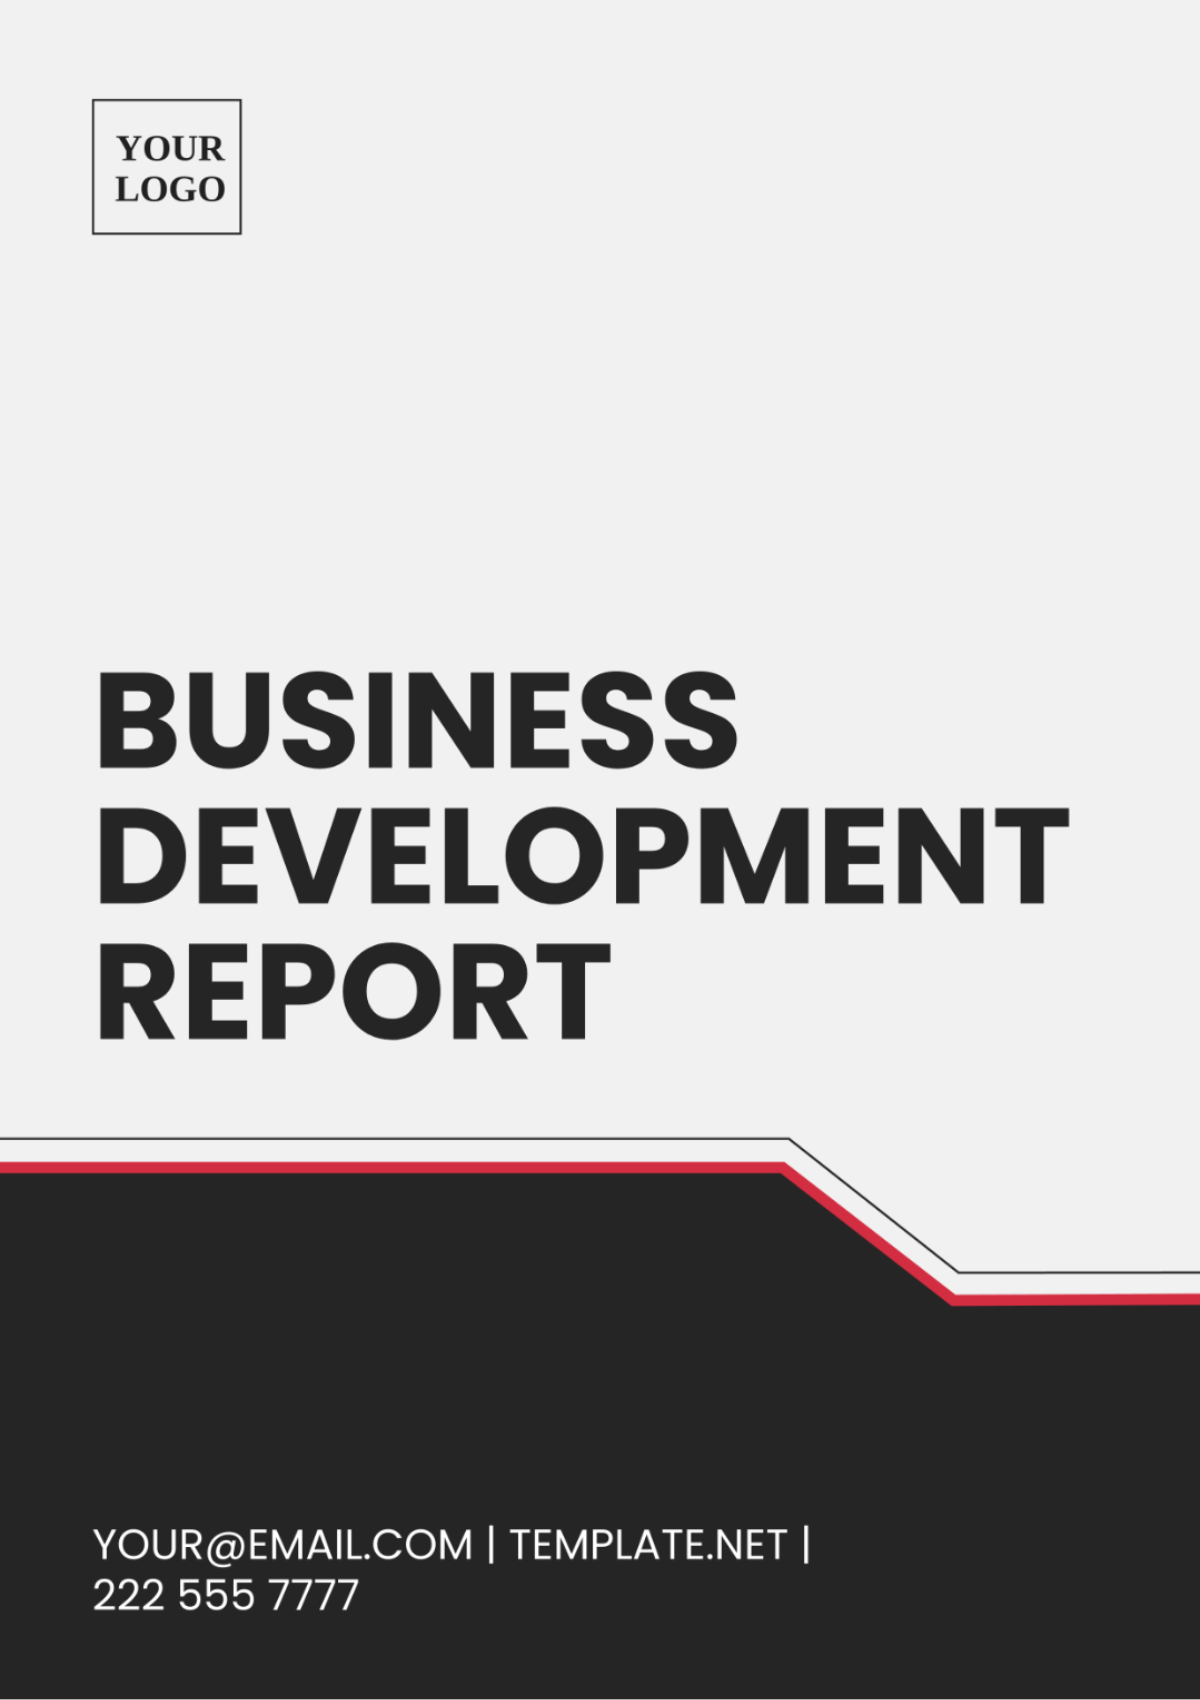 Business Development Report Template